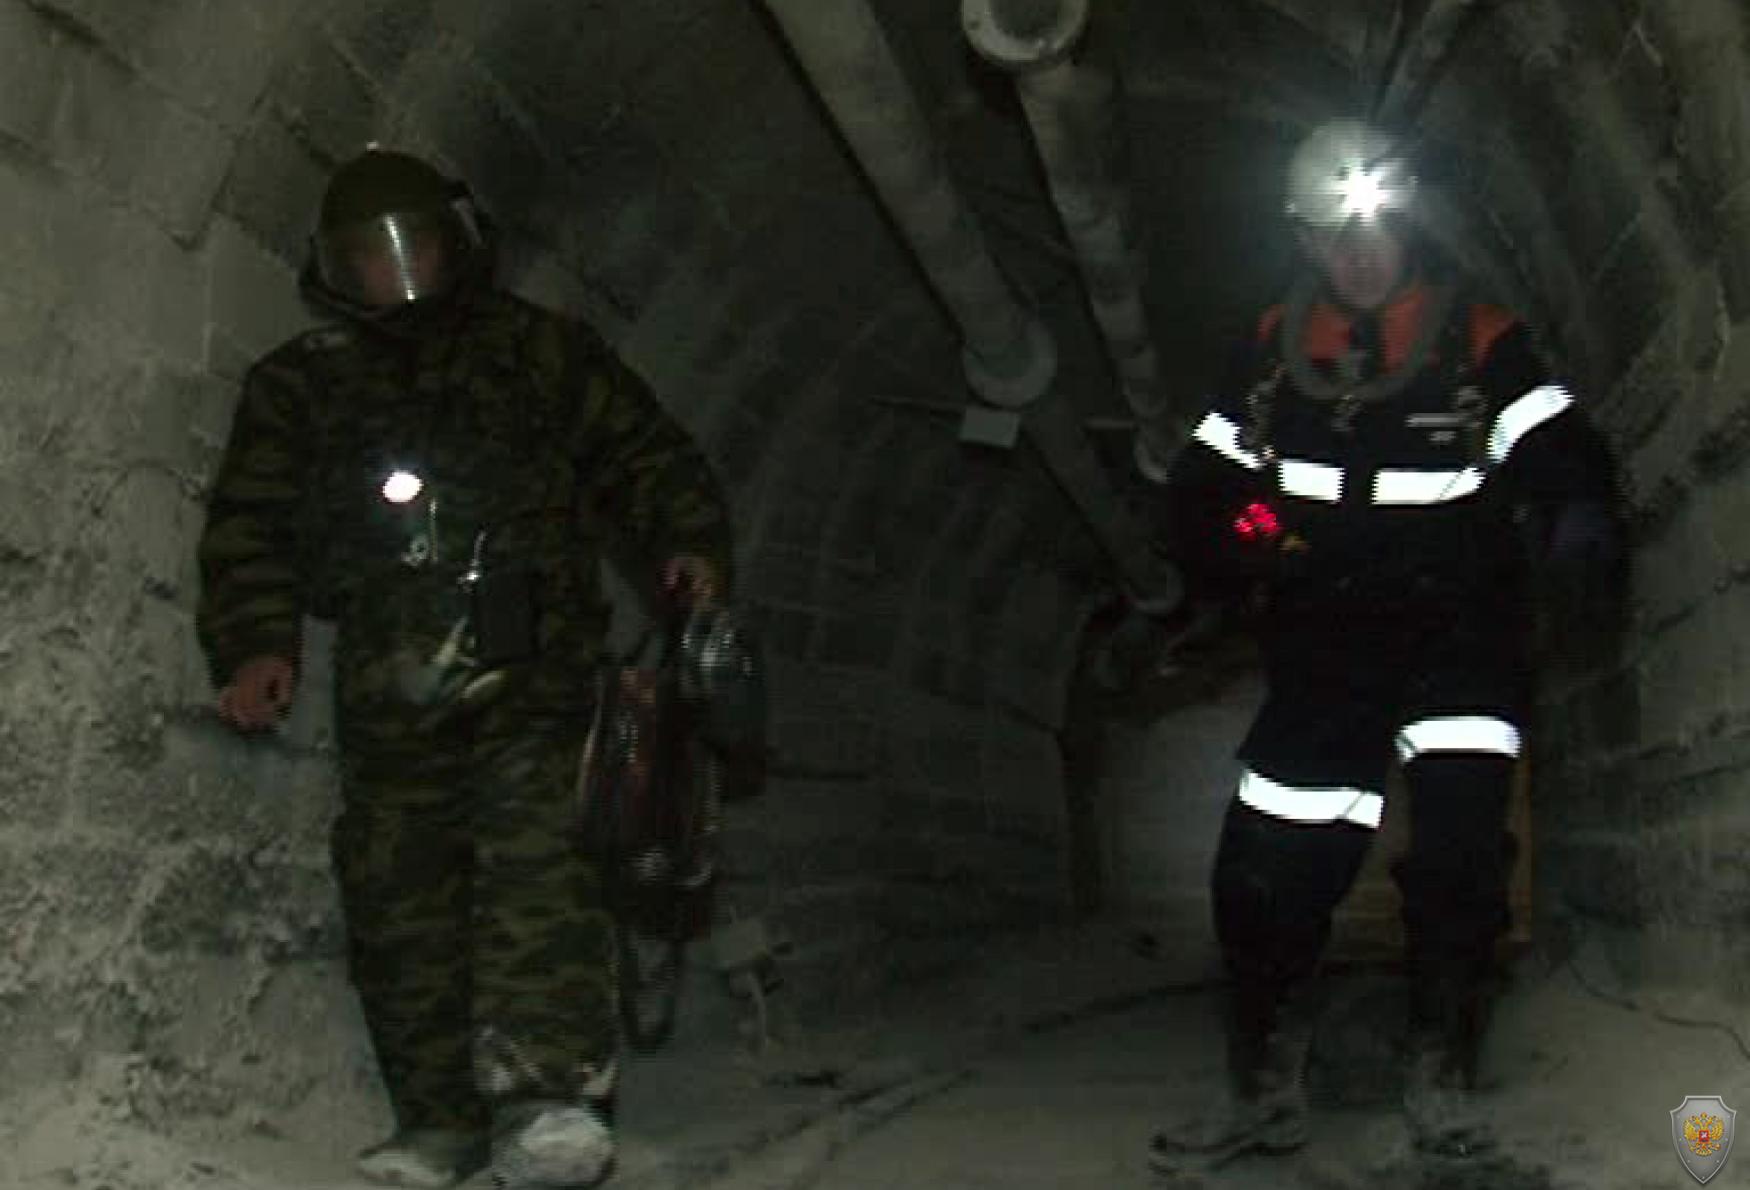 Сотрудники ВГСО и ОМОН группы ликвидации угрозы взрывов осуществляют поиск взрывных устройств в шахте